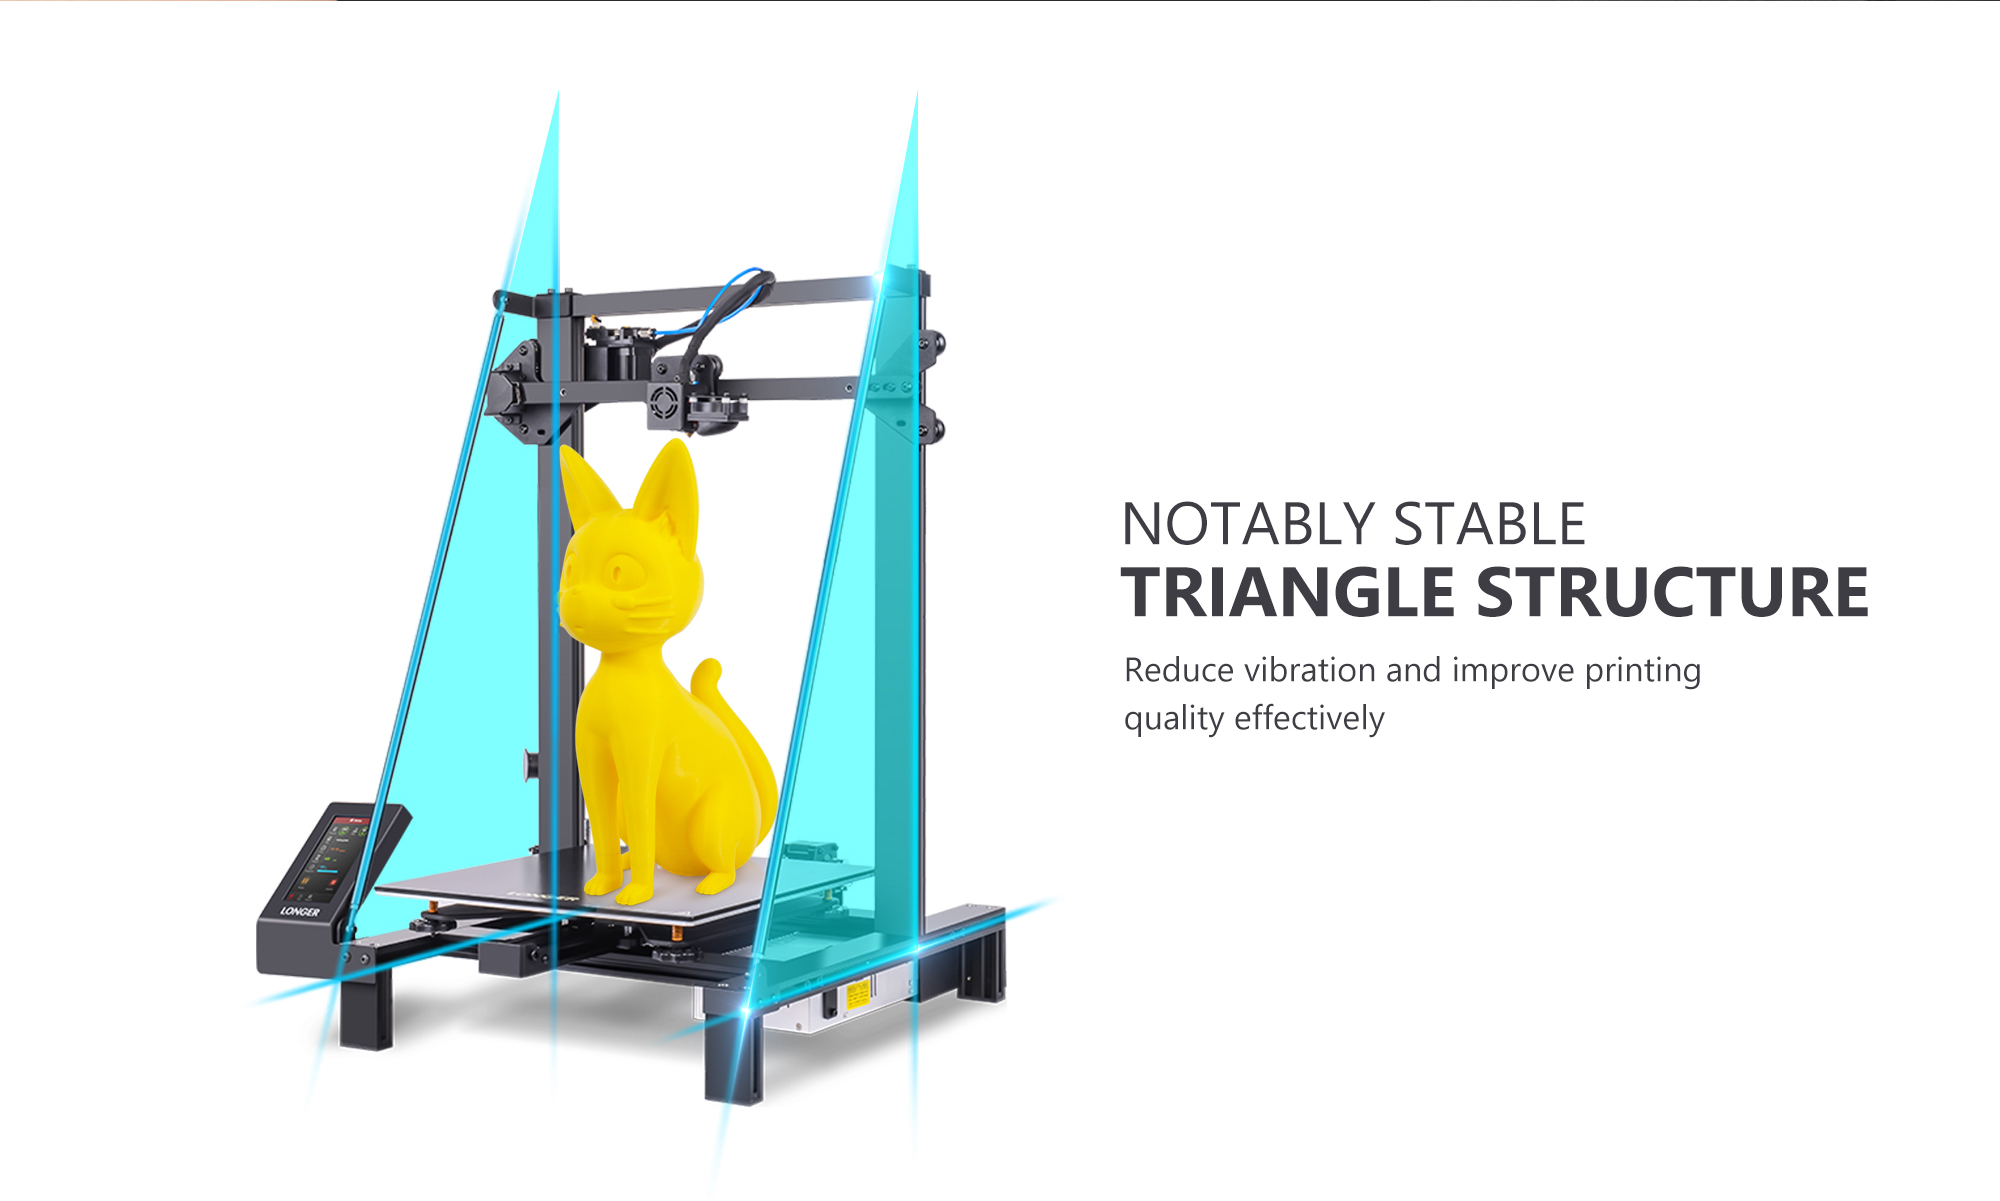 Kedvező árú 3D nyomtatót tudunk rendelni a Longertől